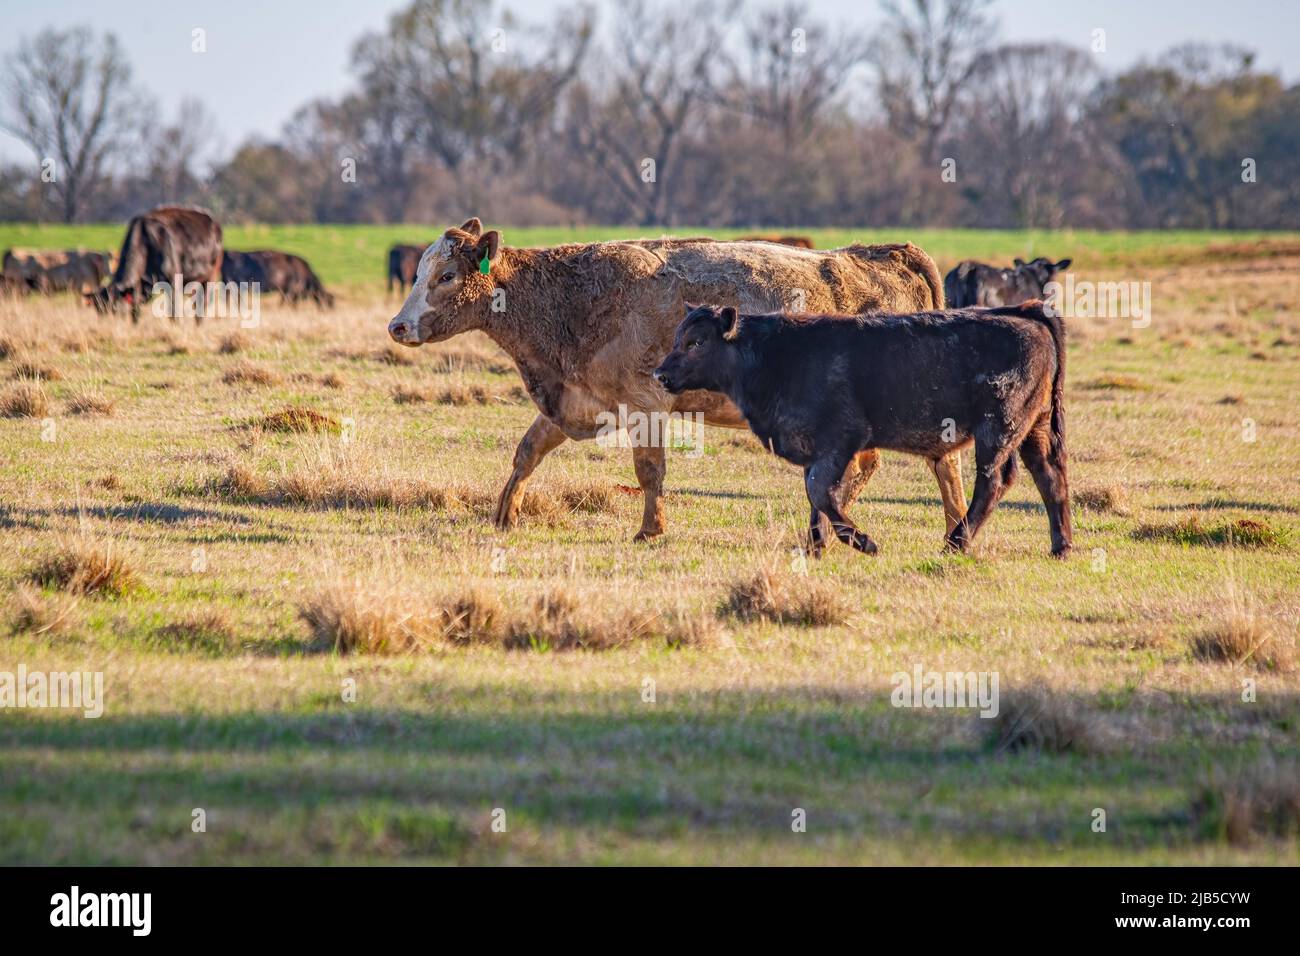 Auf einer Weide im frühen Frühjahr im Süden der Vereinigten Staaten wandern gekreuzte Rinderkuh und -Kalb nach links, wobei die Herde im Hintergrund nicht fokussiert ist. Stockfoto